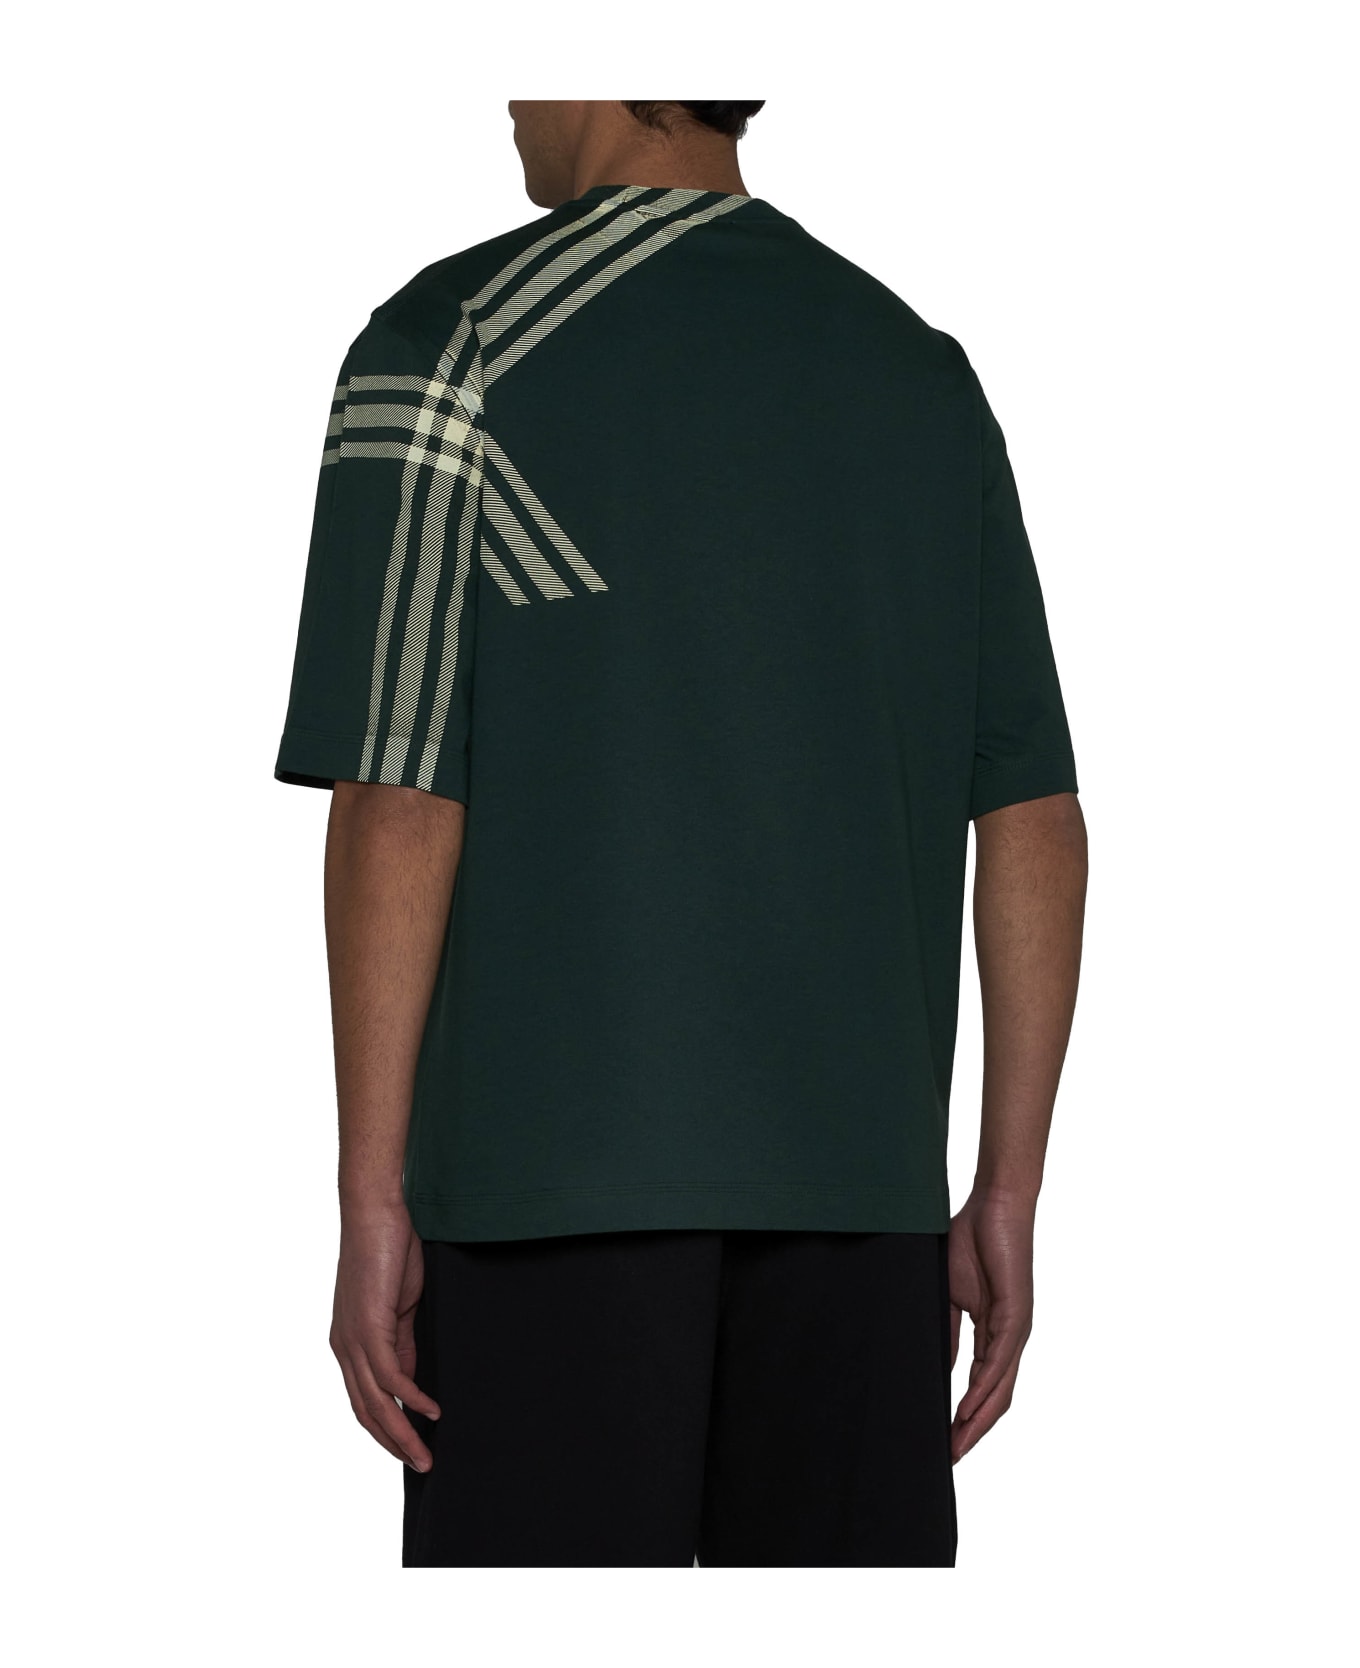 Burberry Green Cotton T-shirt - Green シャツ